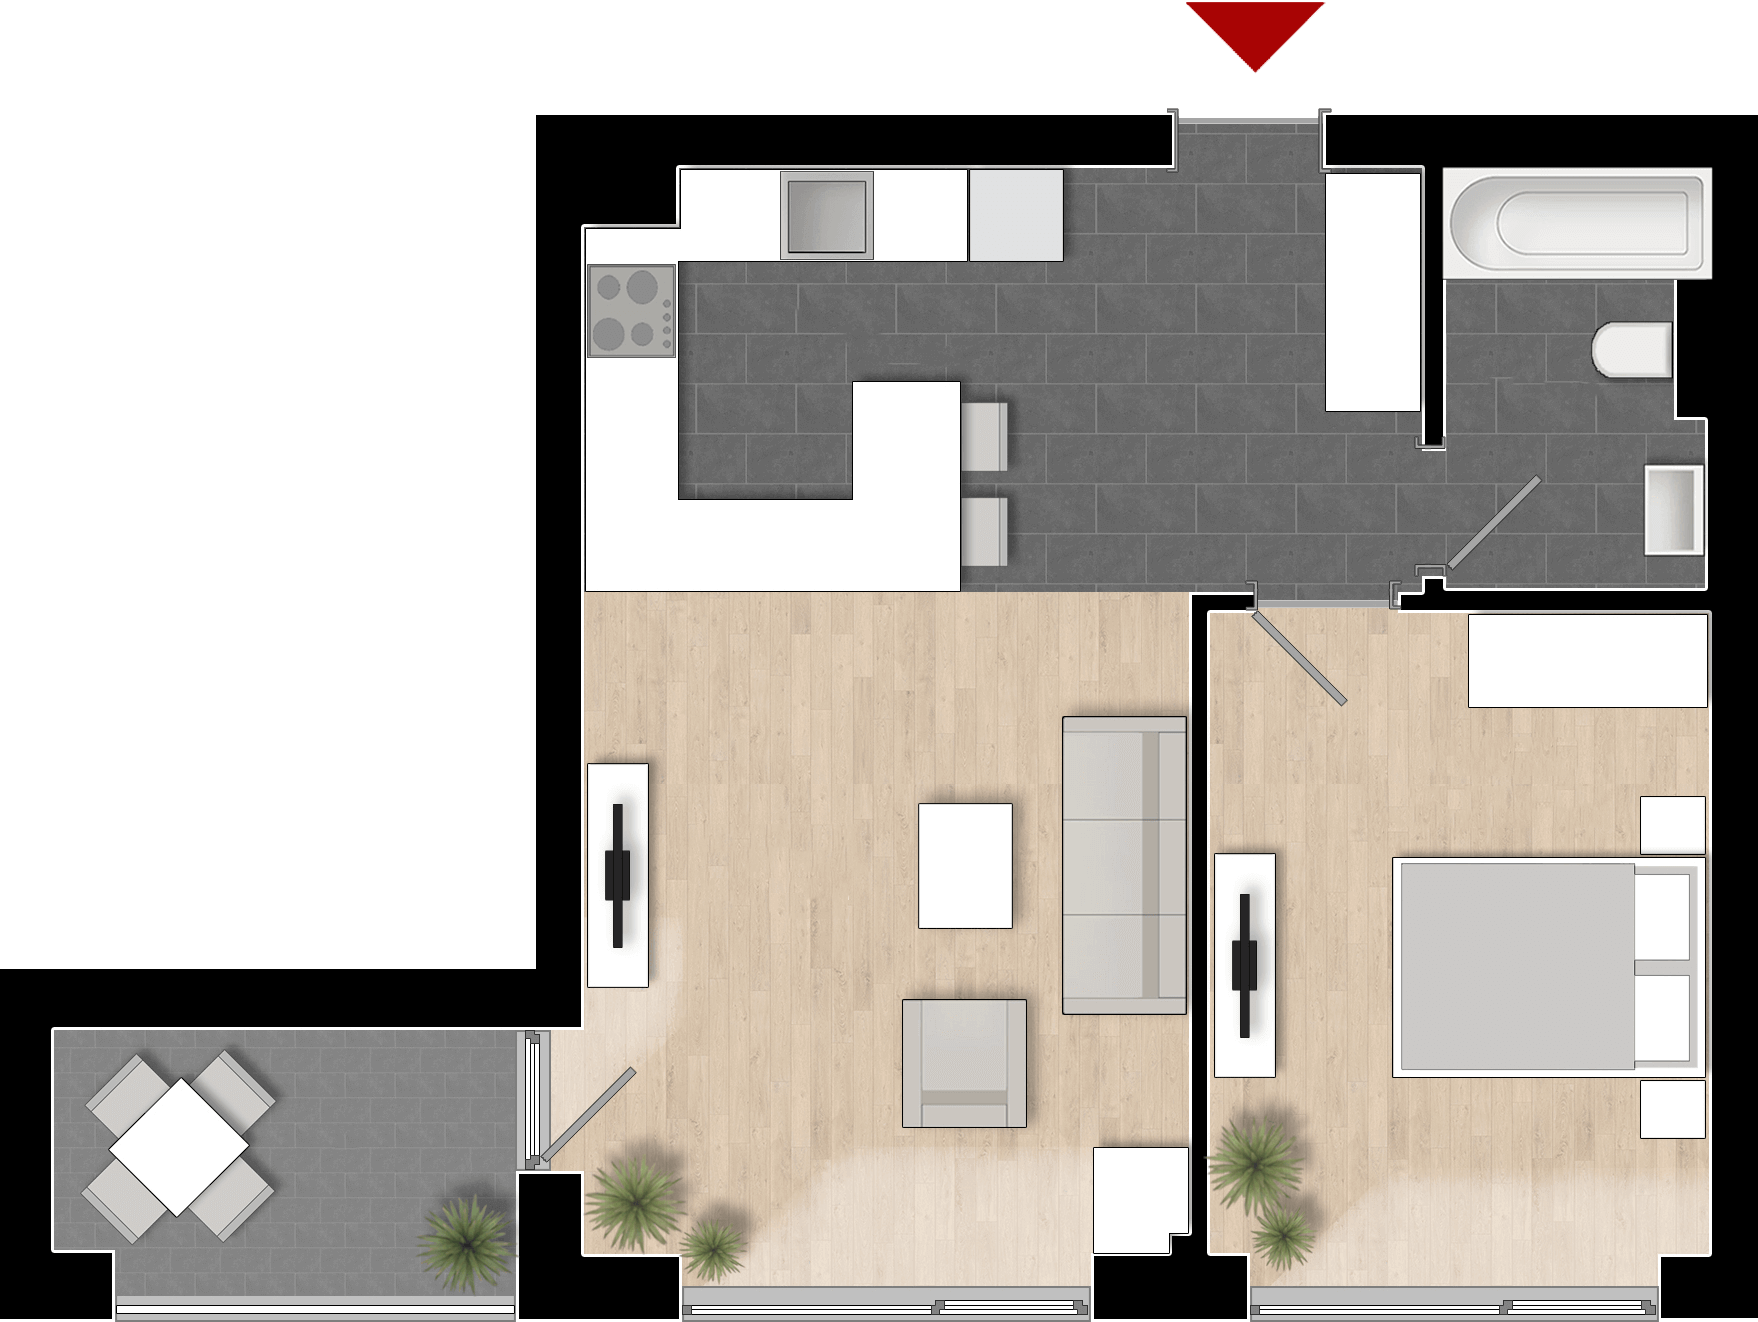  Apartament 612, Tip de apartament 1A cu 2 camere 